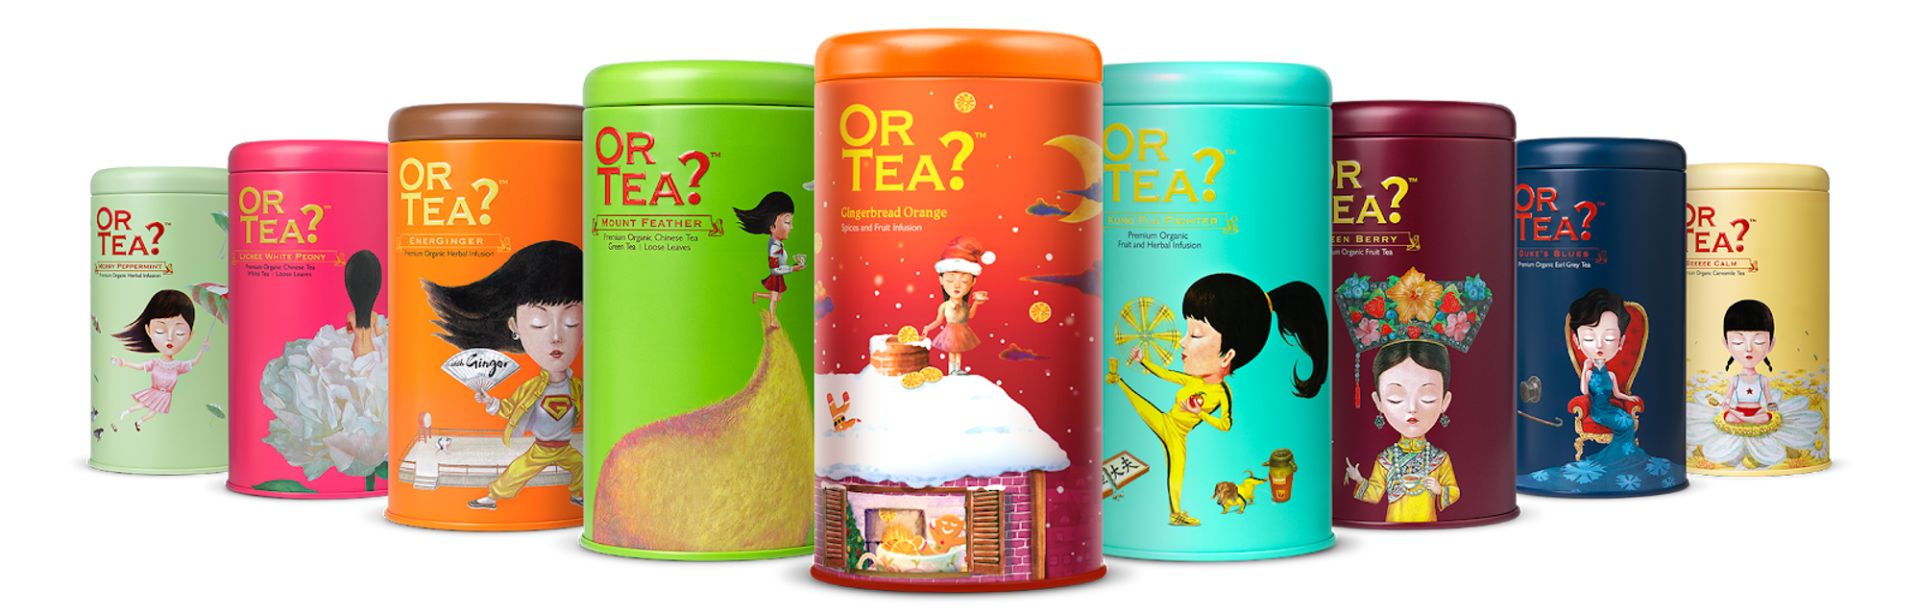 Nieuw in ons assortiment: Or Tea?